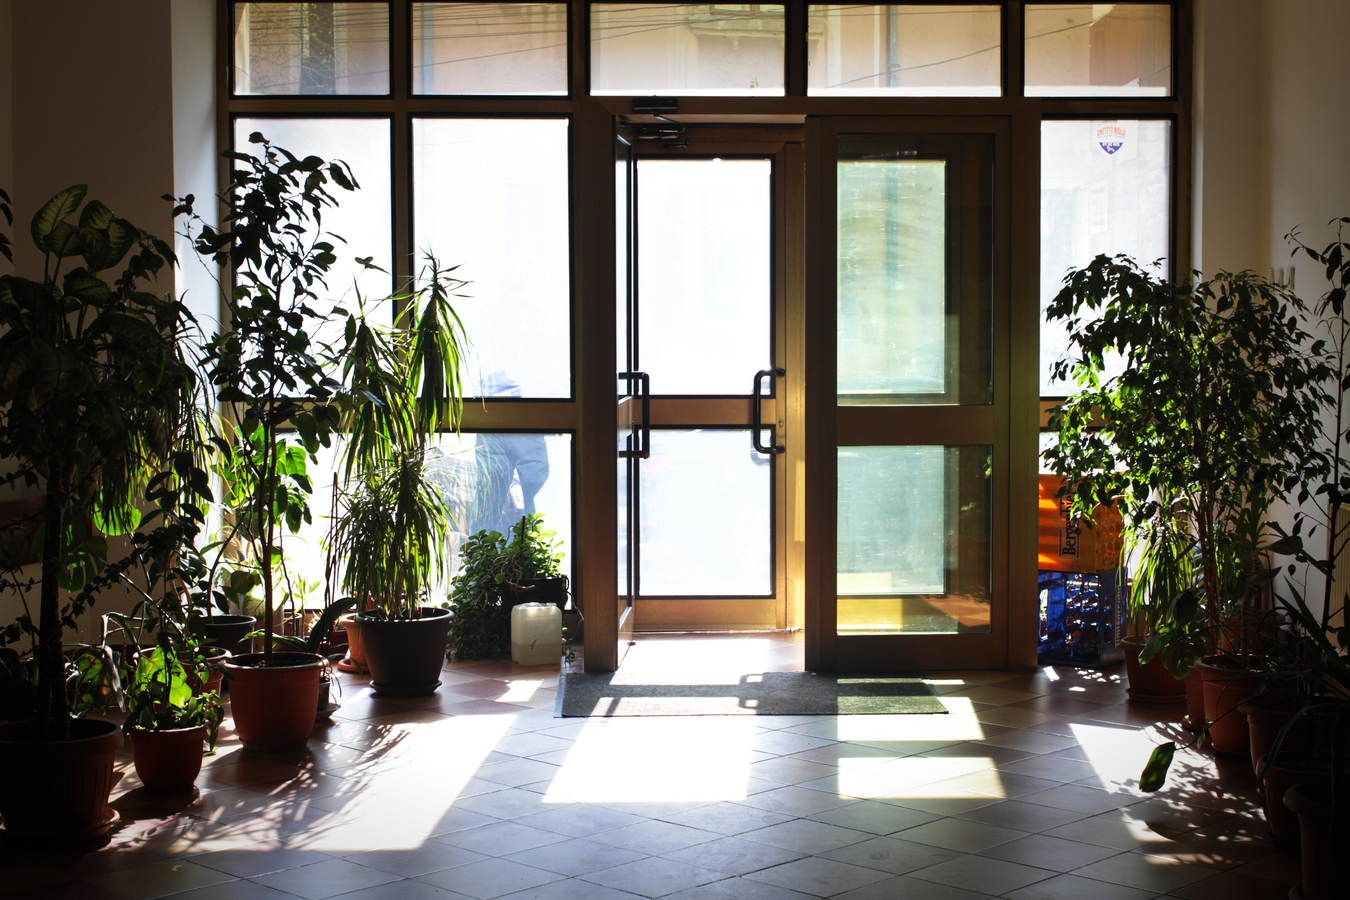 Entrée de l’immeuble. À Bucarest, il est commun de voir des halls ou des escaliers cou-verts de plantes, certains se transformant parfois en mini jungles urbaines.